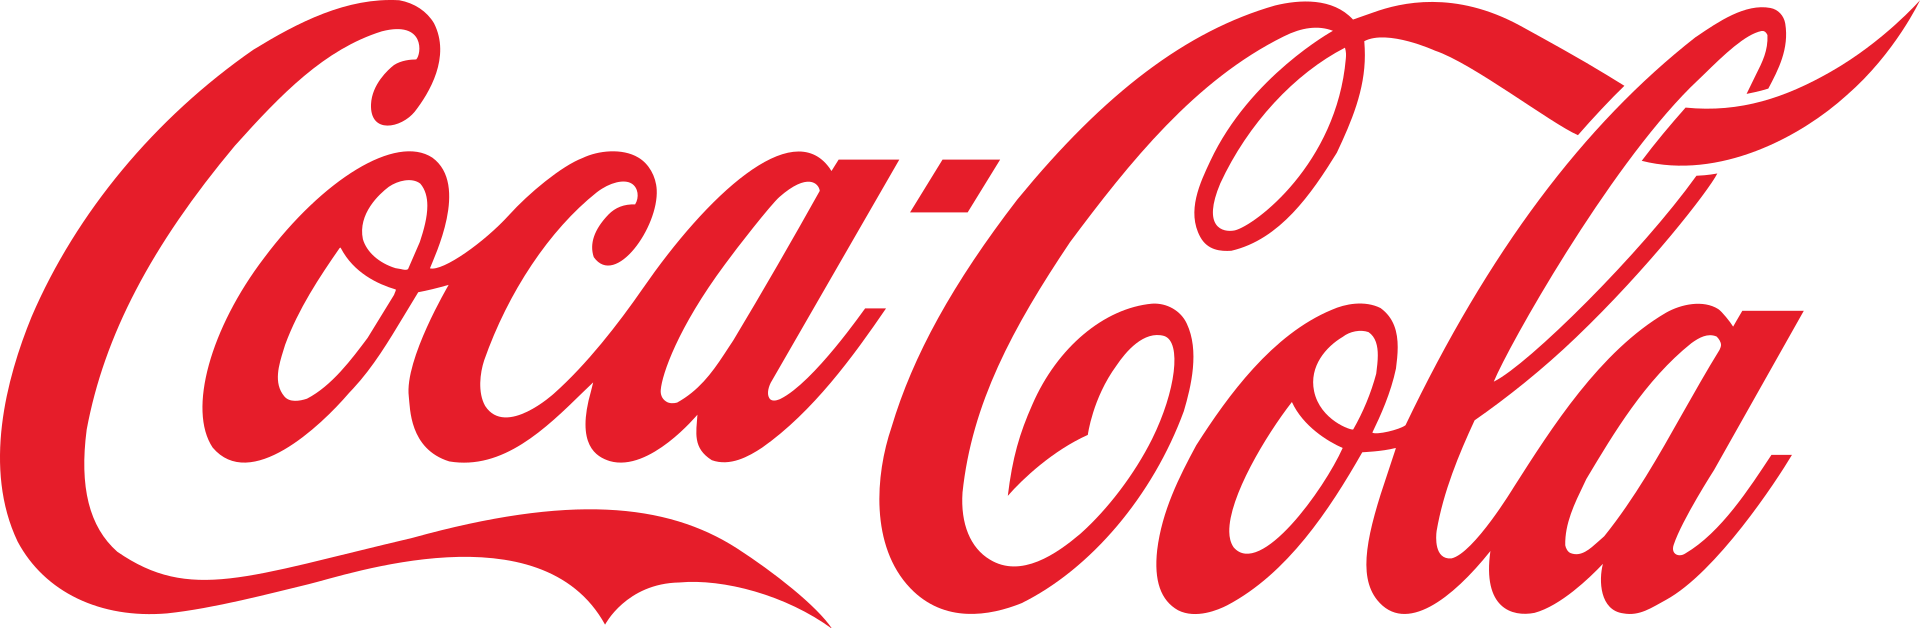 coca-cola_logo_svg.png